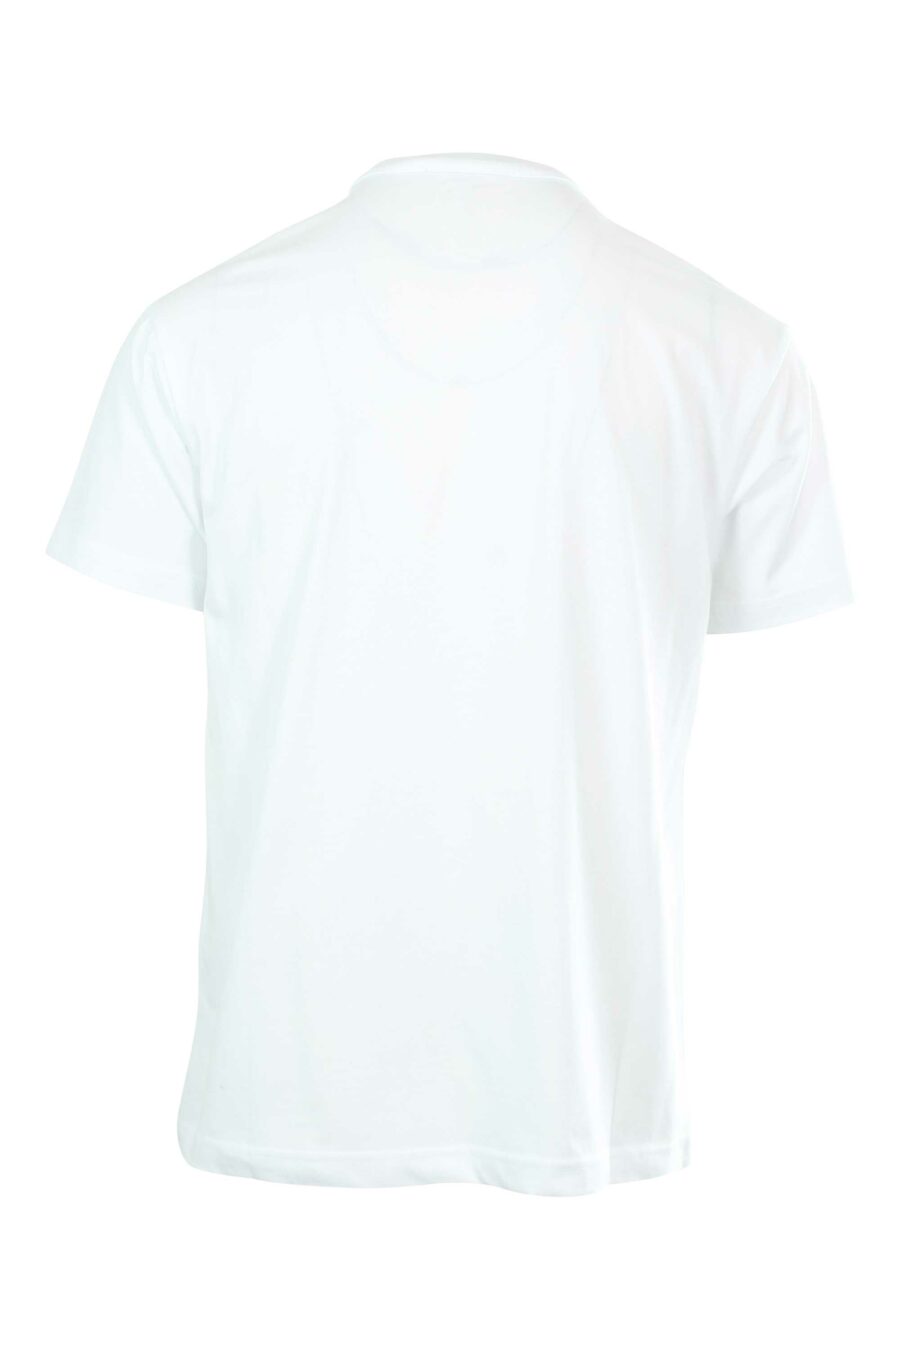 T-shirt branca com maxilogue em contraste - 8052019235371 2